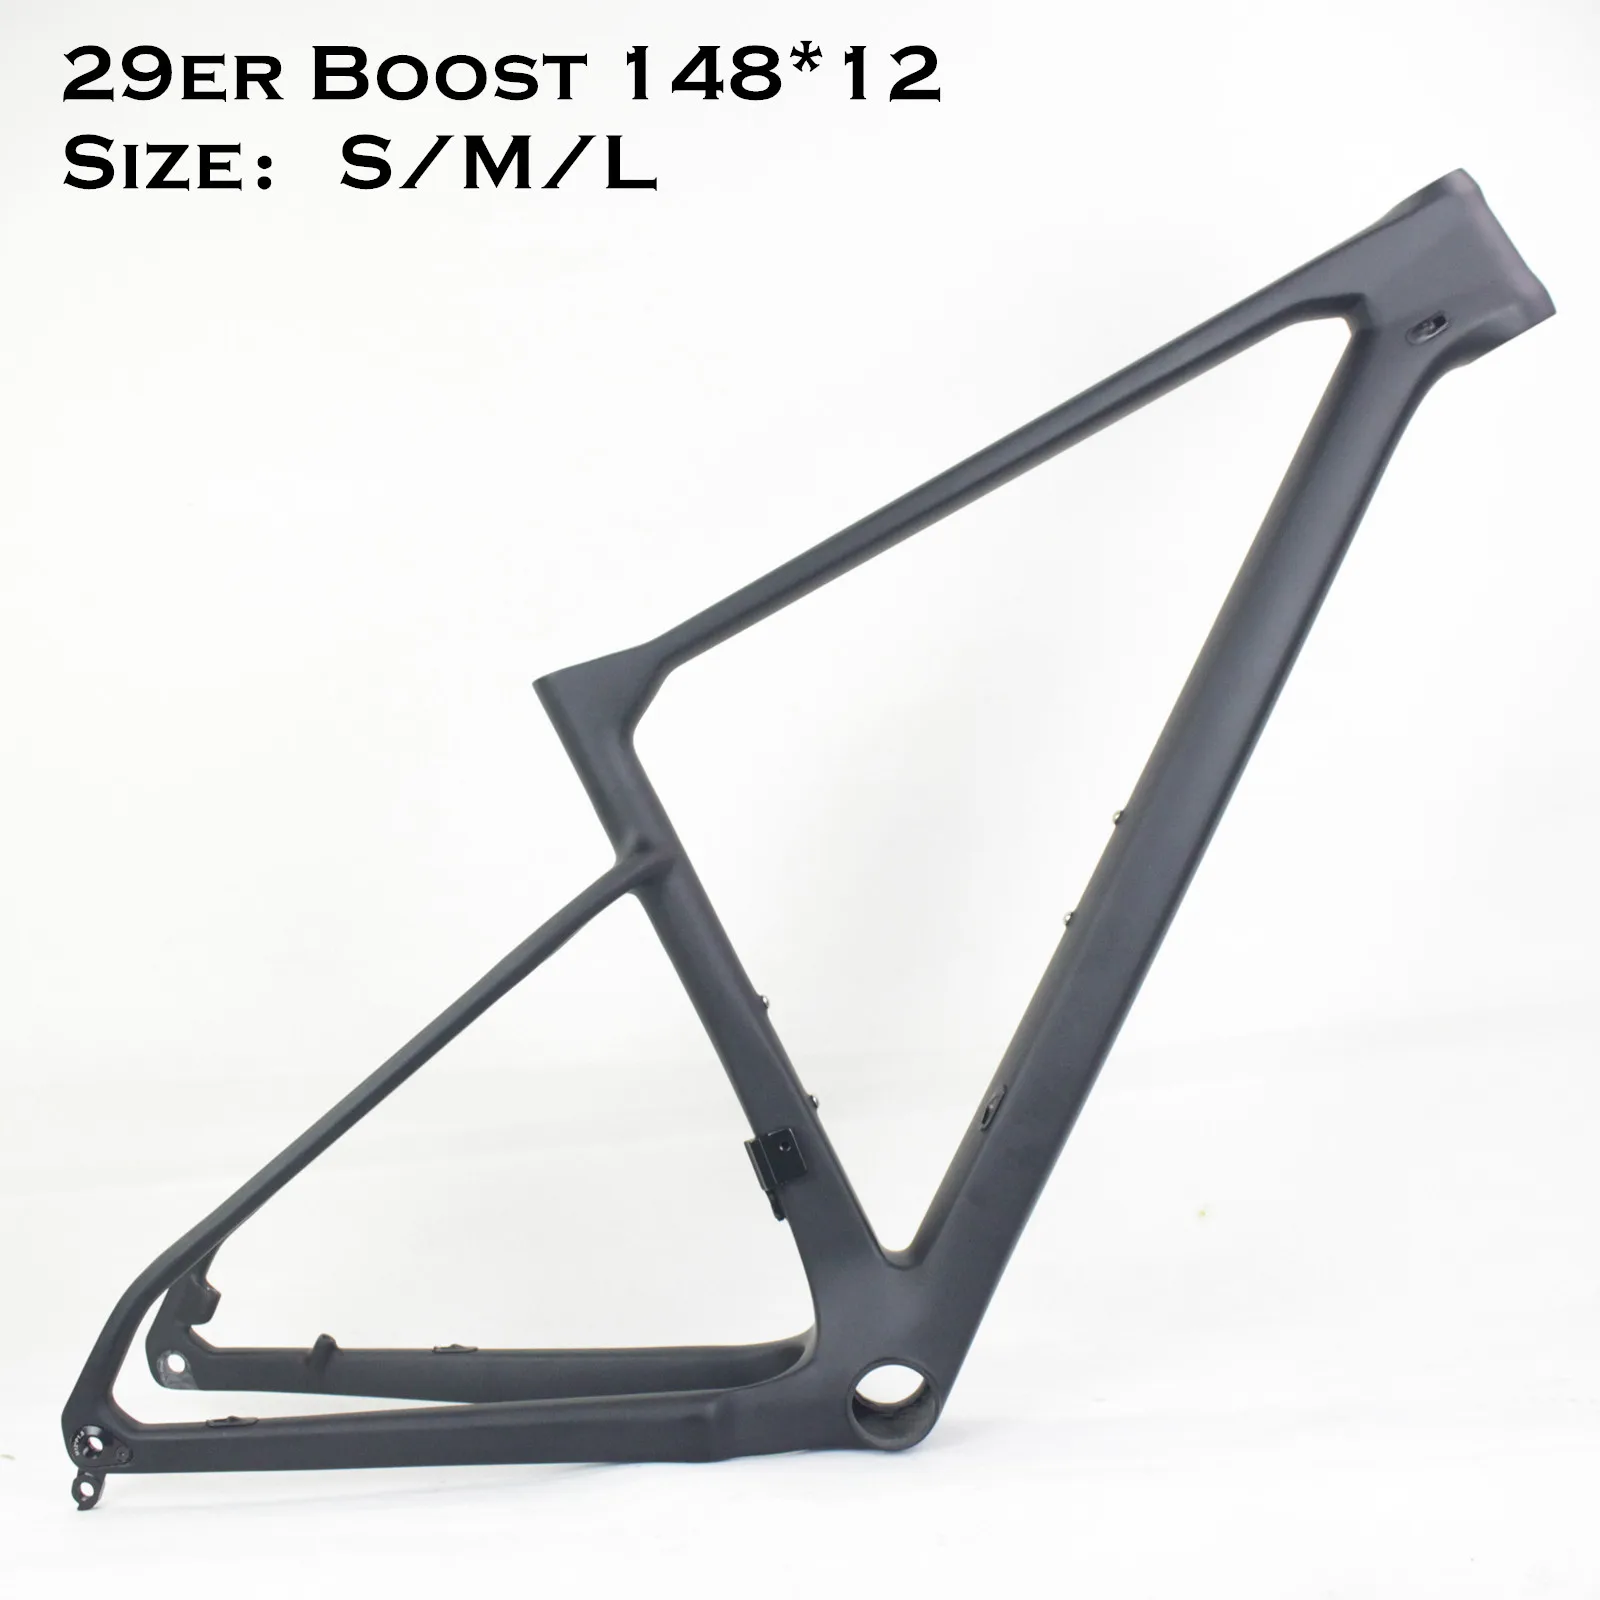 Full Suspension Carbon Fiber Mtb Bike Frame 29er 15/17/19" Mountain Frameset 